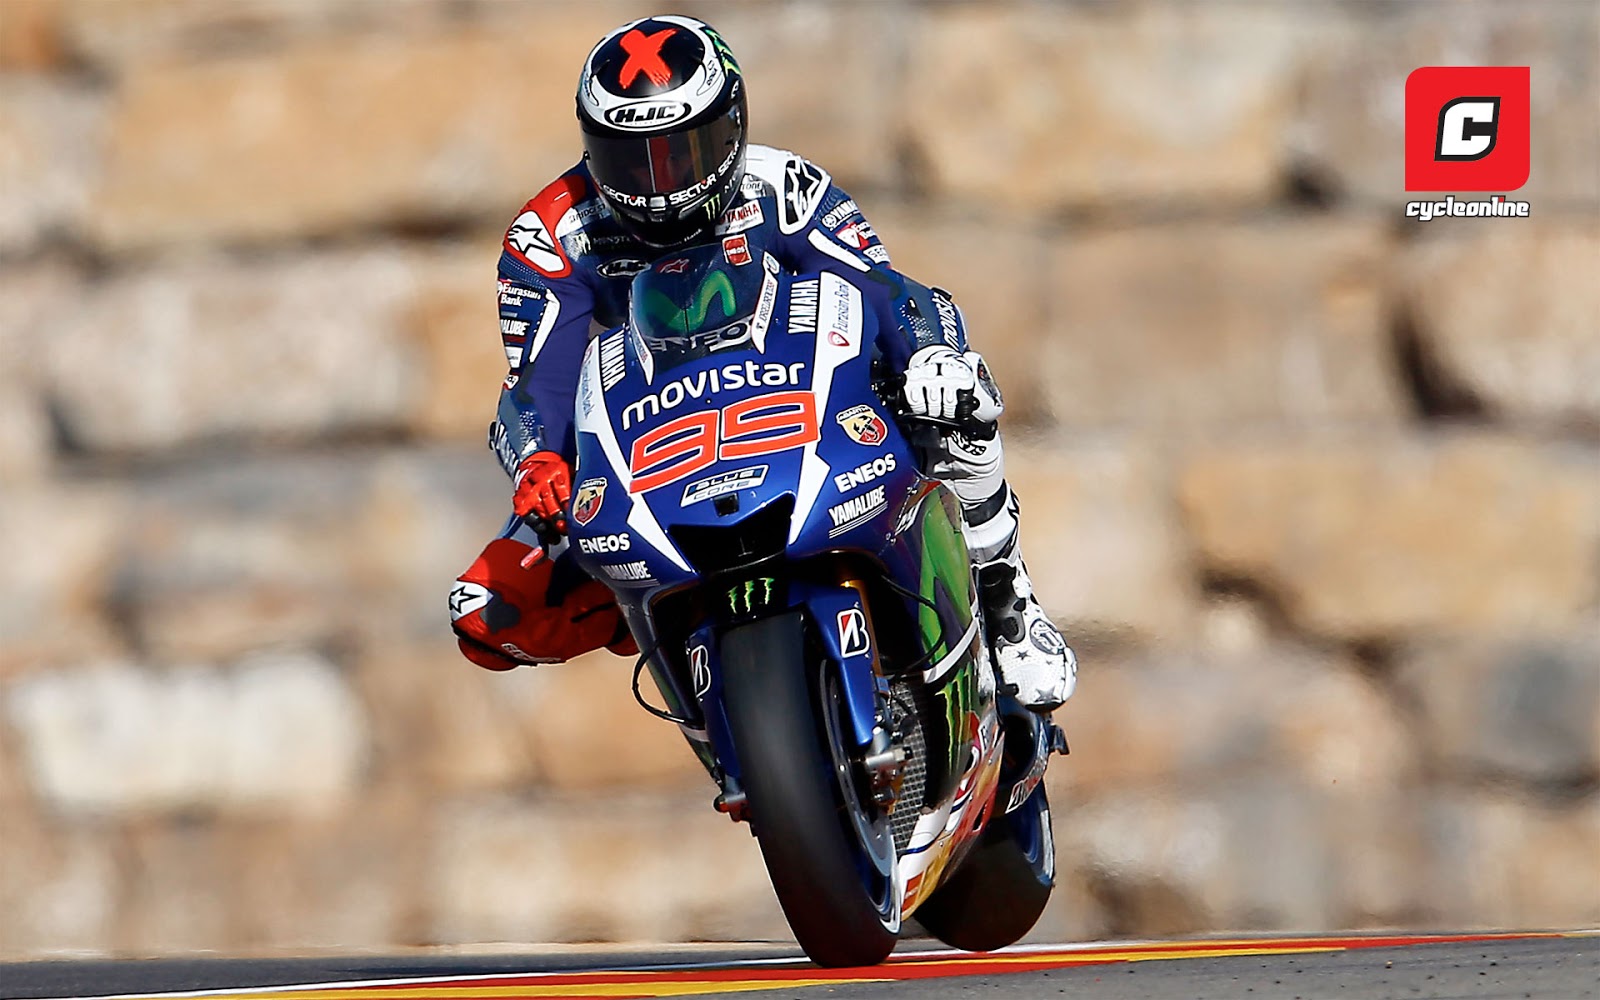 Wallpaper Jorge Lorenzo MotoGP Terbaru 2016 Menghadirkan